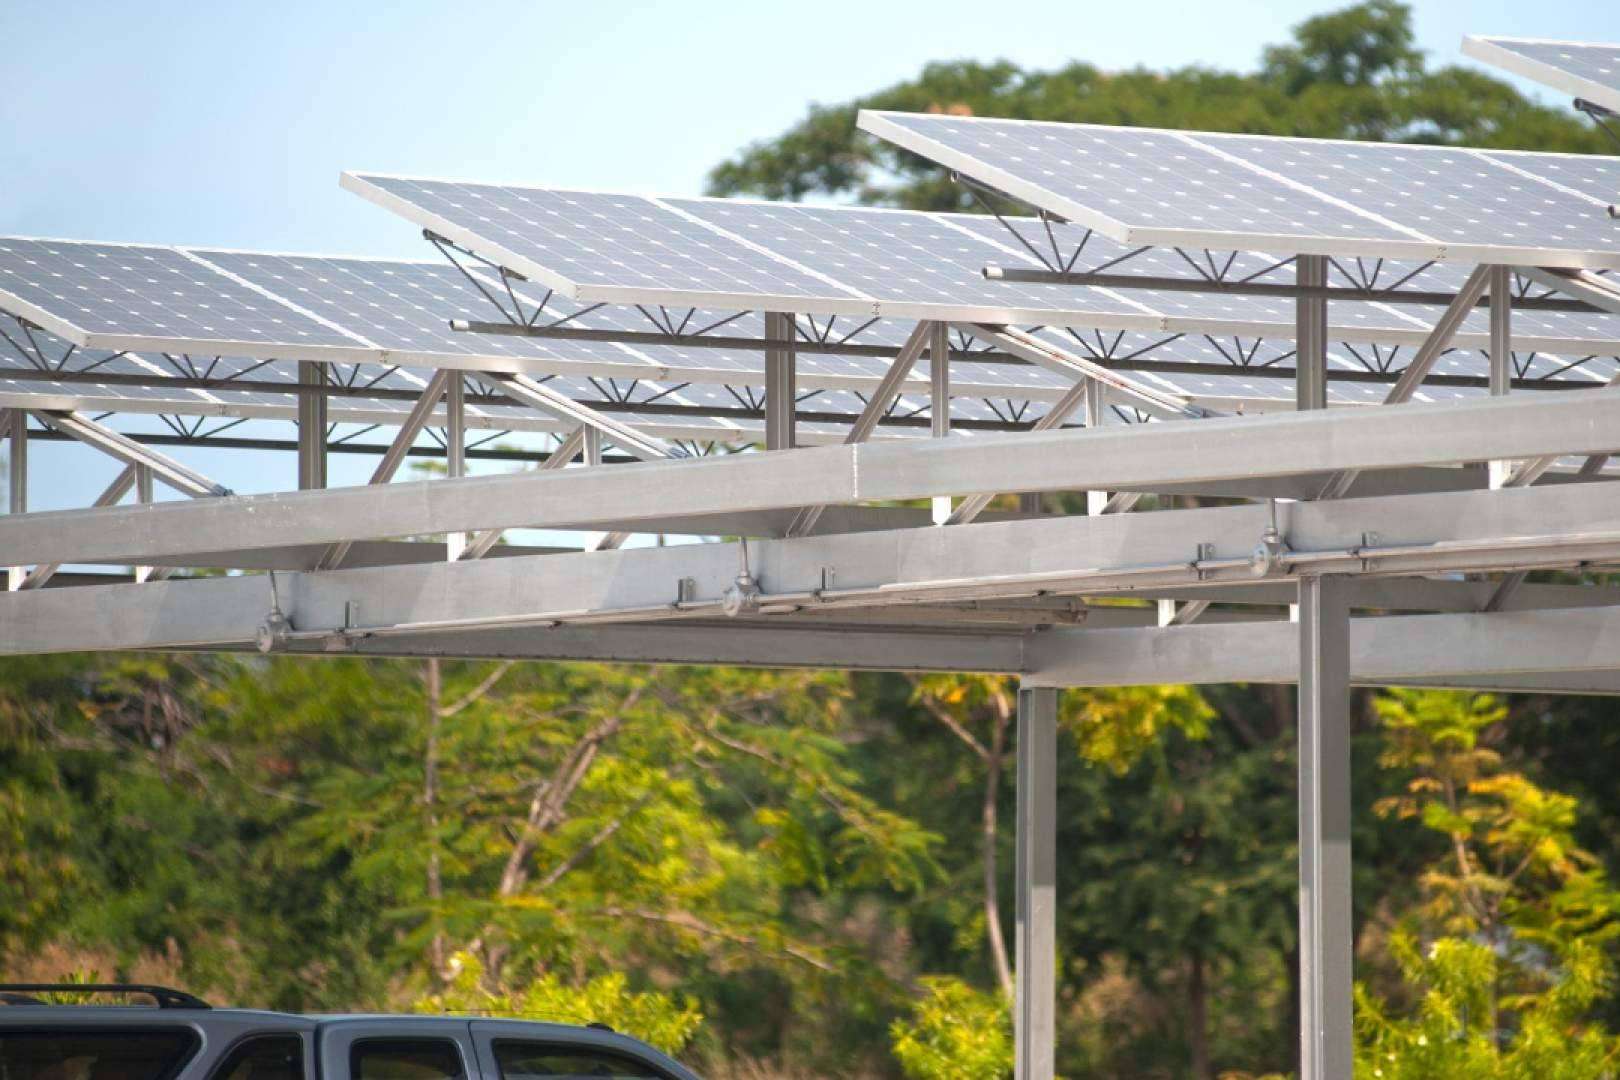 Vatios Verdes informa de que todos los aparcamientos de Francia tendrán que instalar placas solares